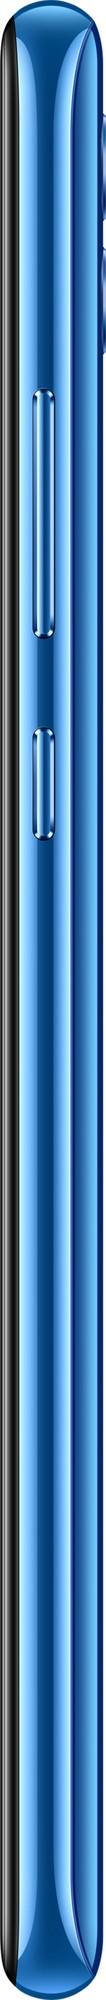 Смартфон Honor 10 Lite 6/64GB Синий